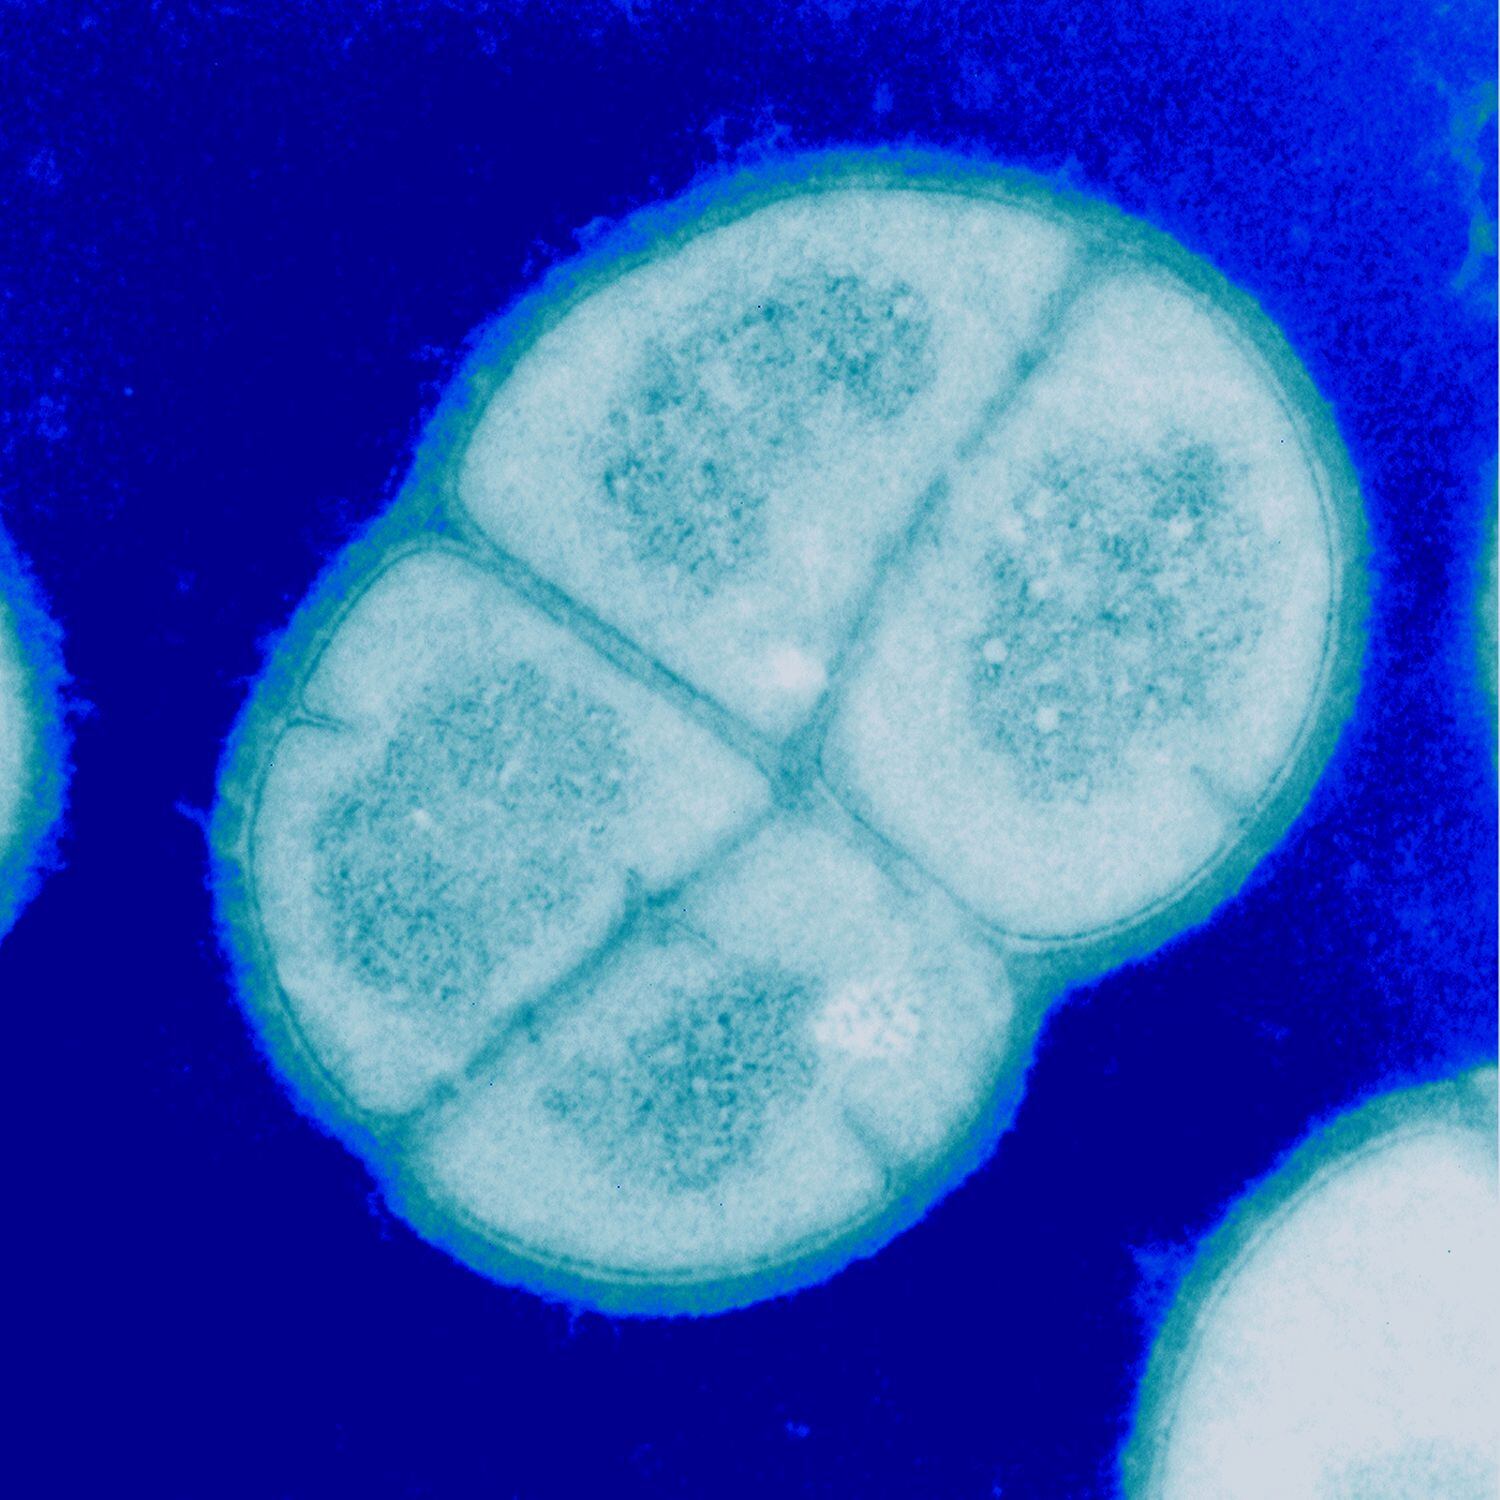 La 'Deinococcus radiodurans' esta siendo estudiada por los militares de EE UU por su resistencia a la radiación.